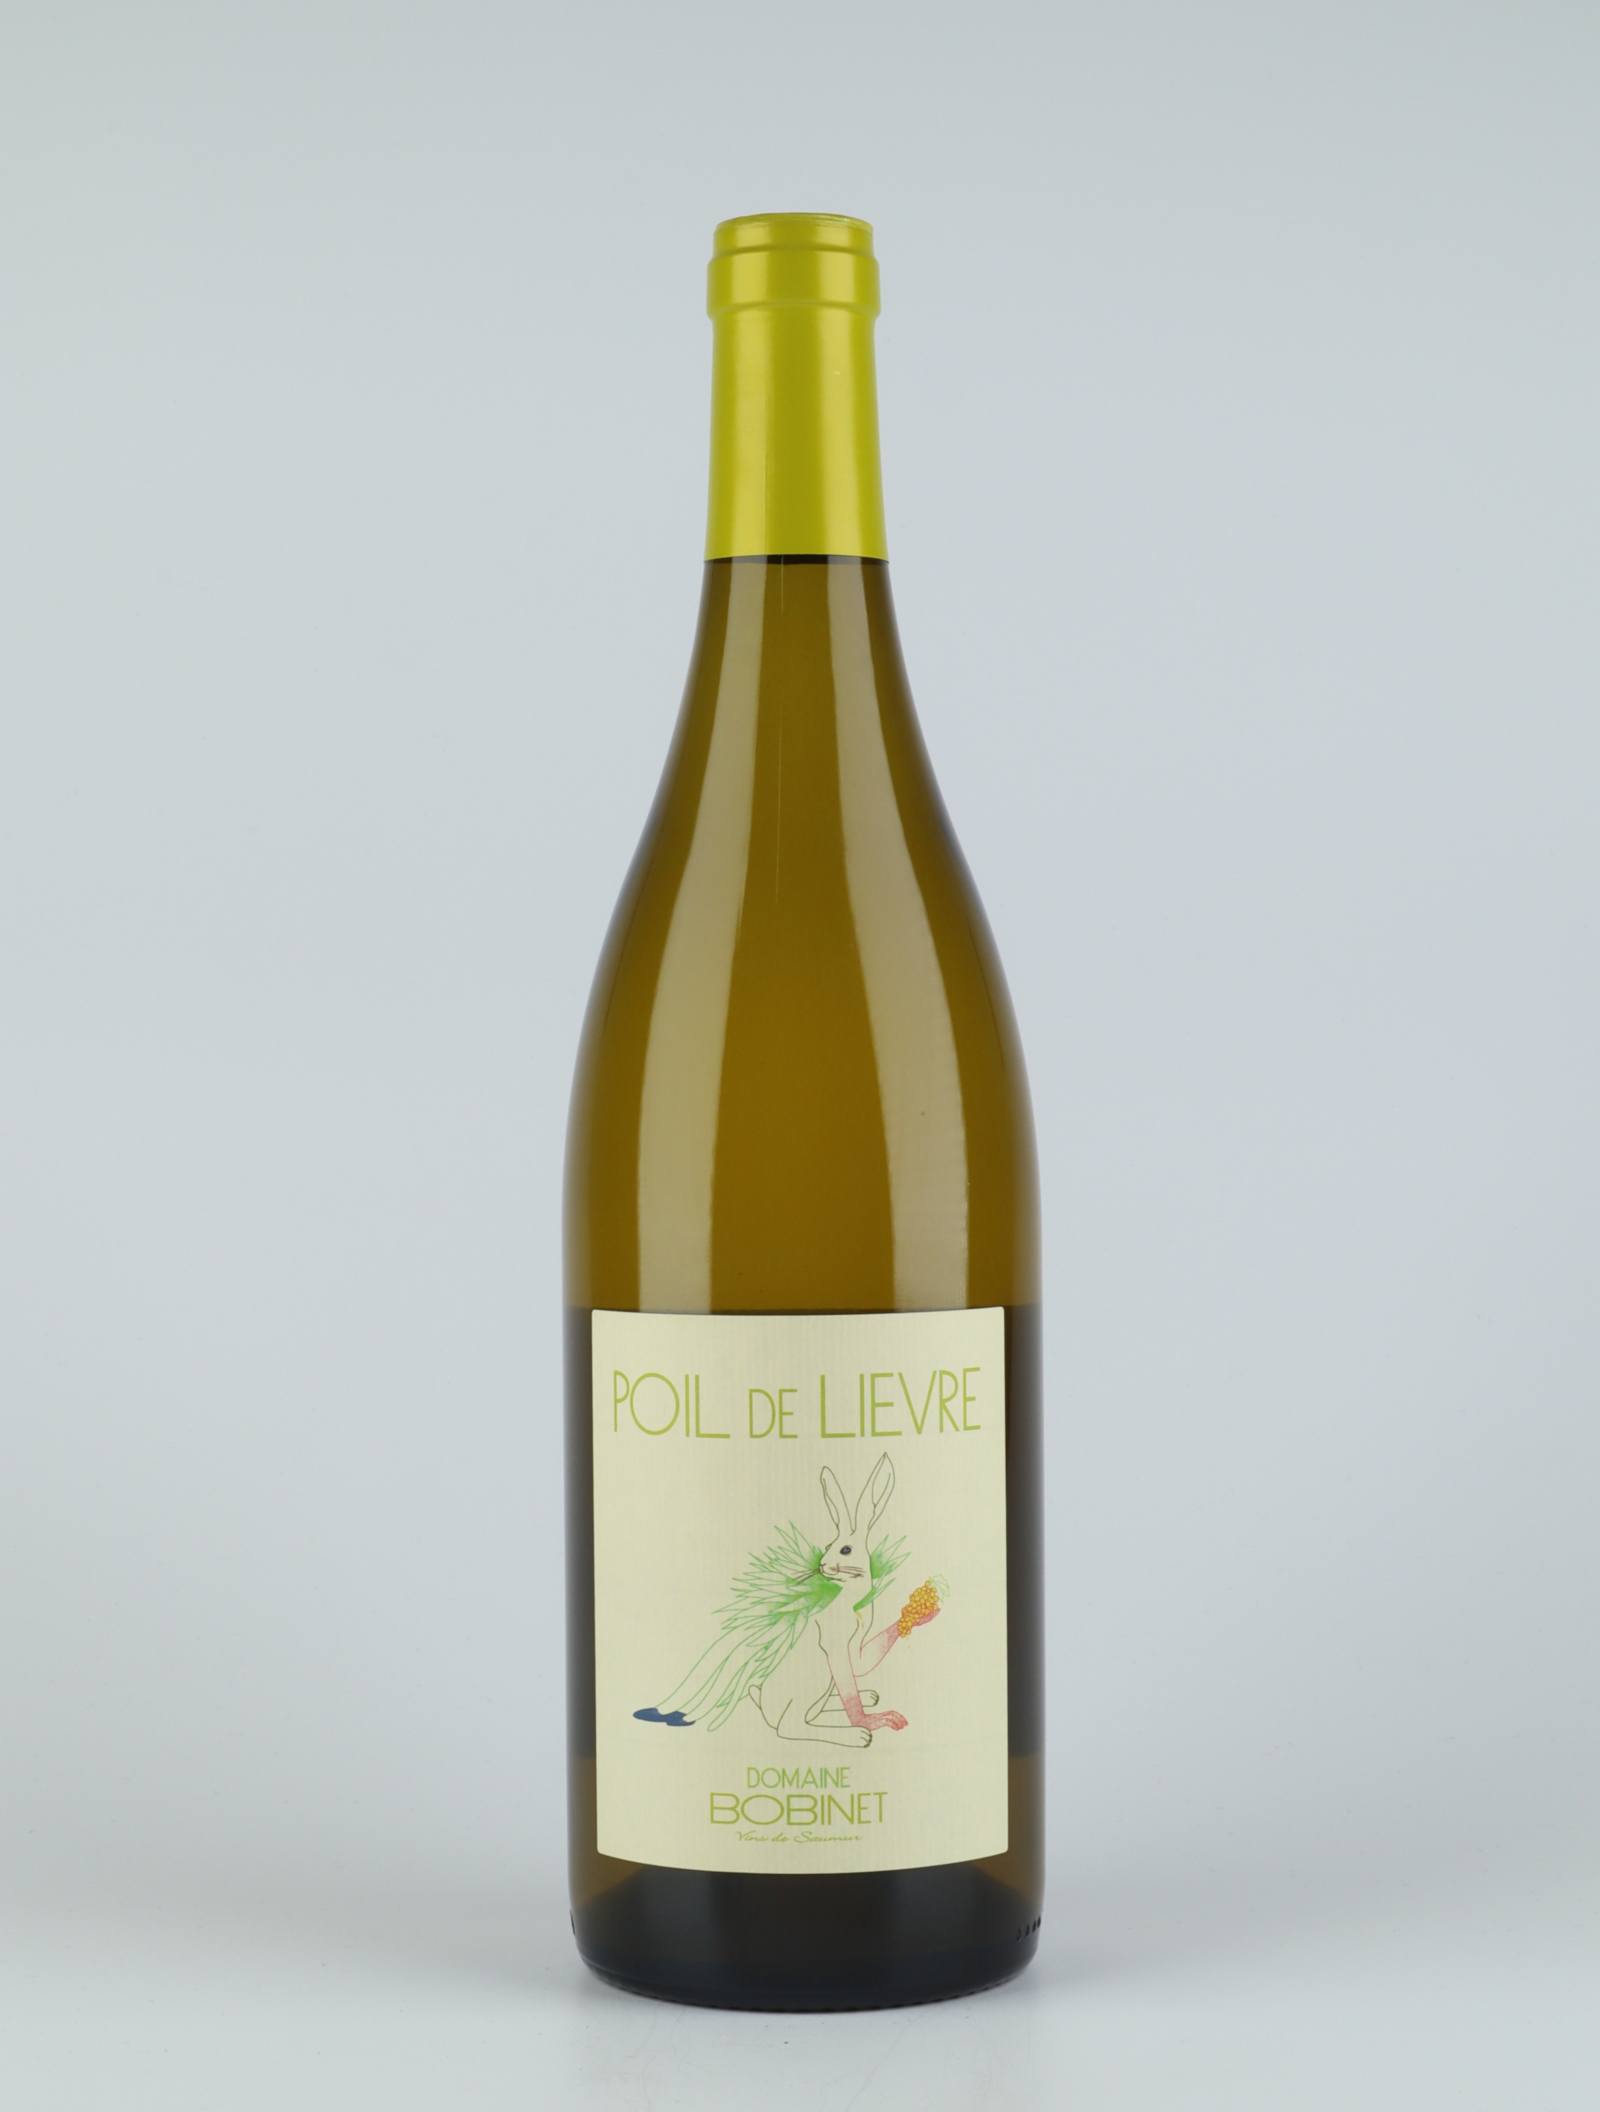 A bottle 2019 Saumur Blanc - Poil de Lièvre White wine from Domaine Bobinet, Loire in France